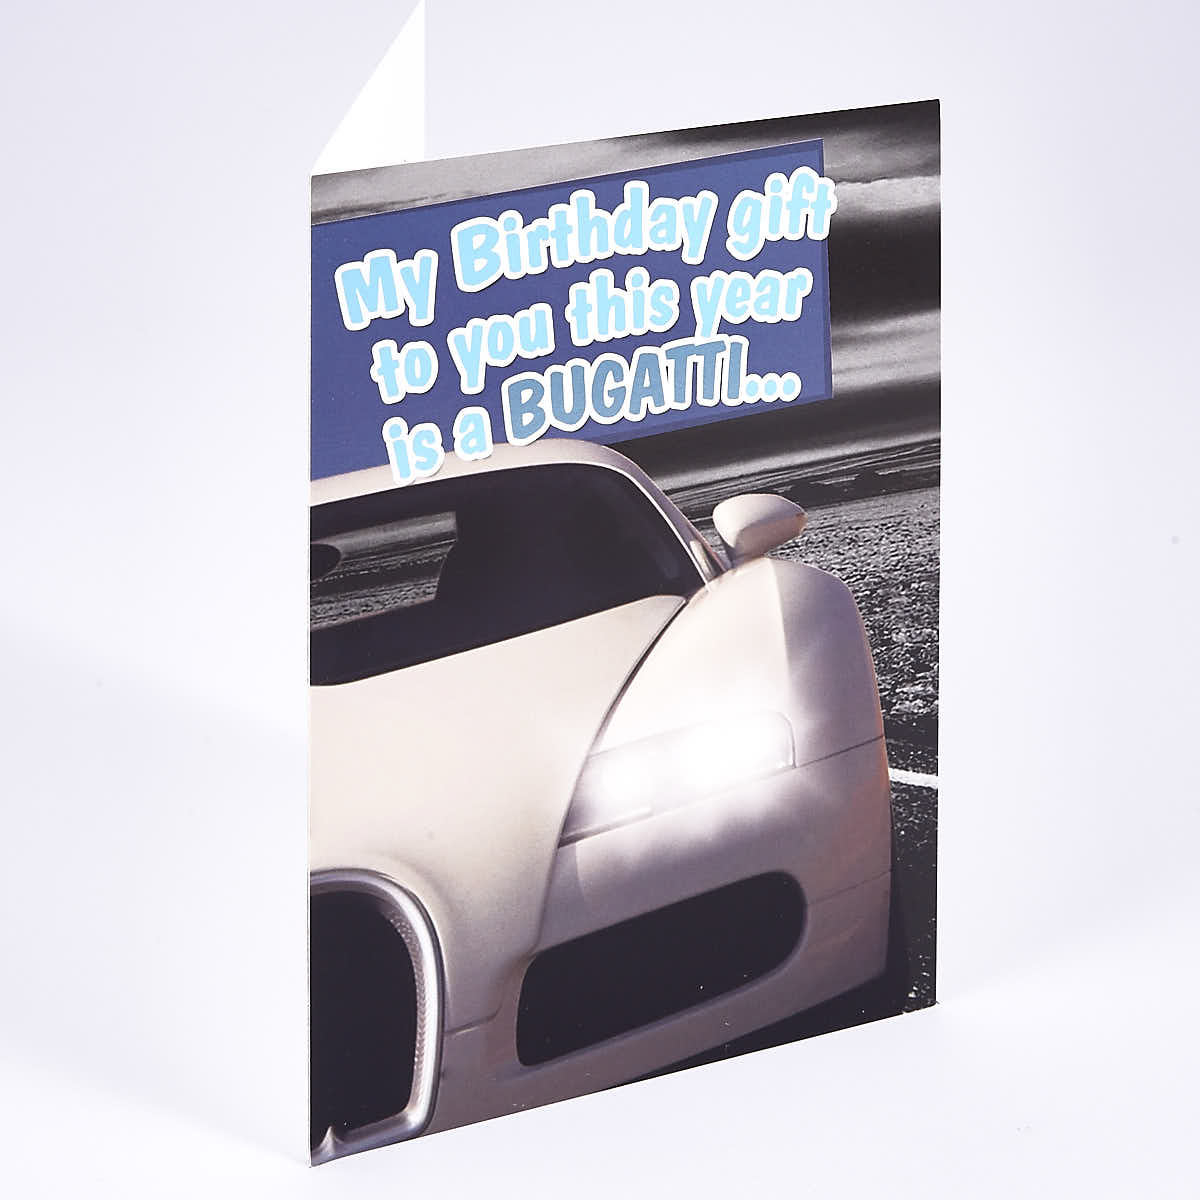 Humour Birthday Card - Bugatti